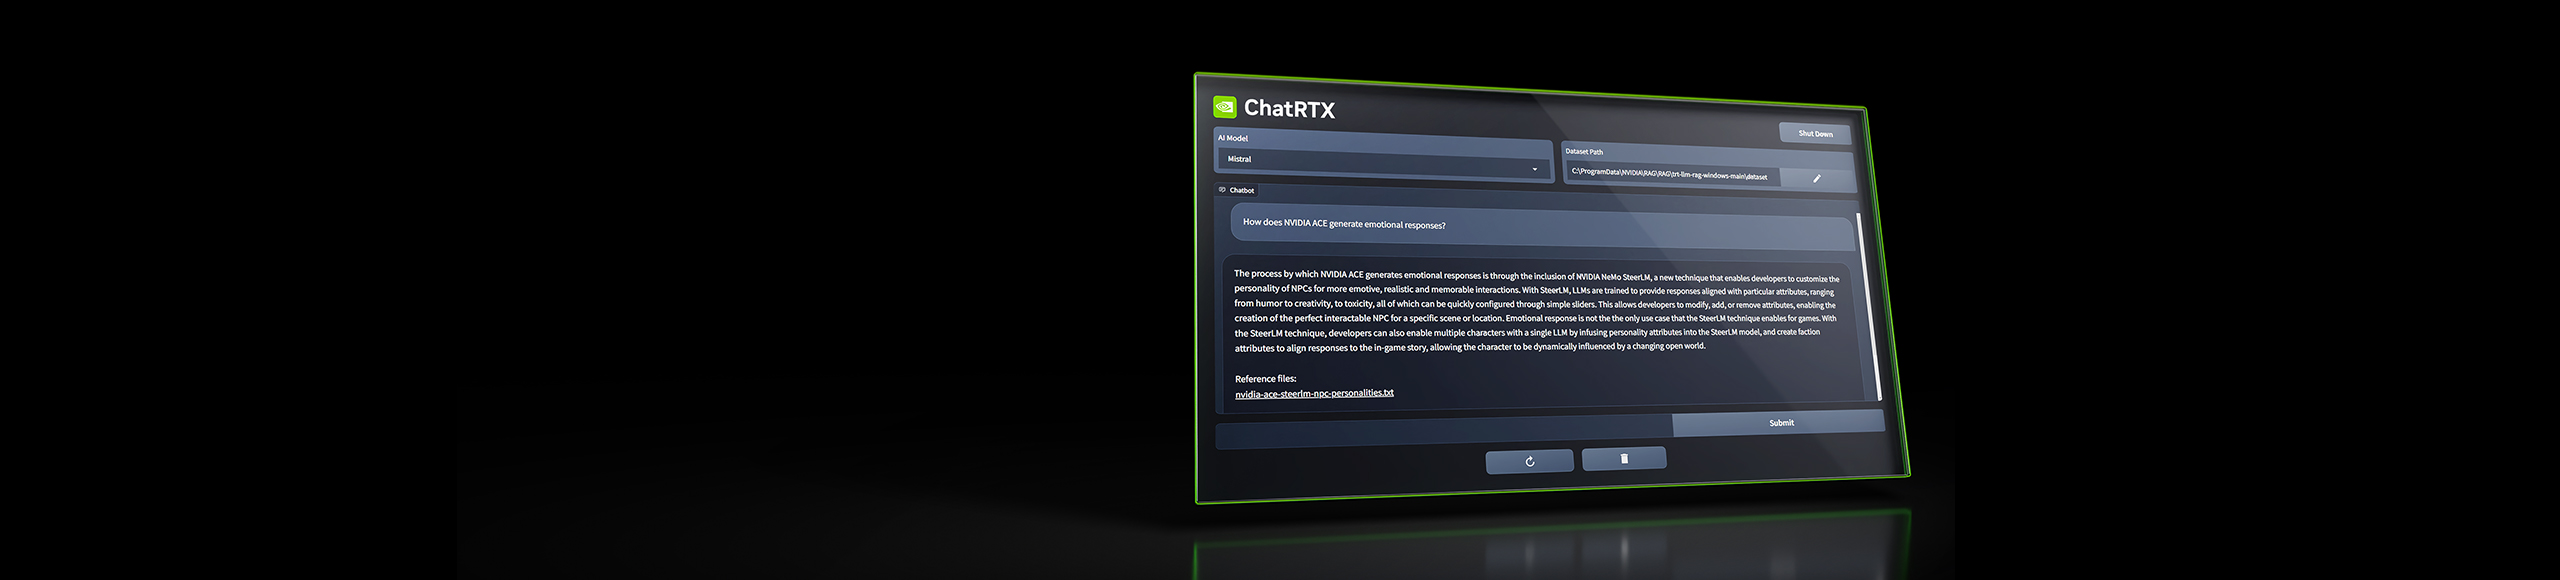 [情報] NVIDIA Chat With RTX